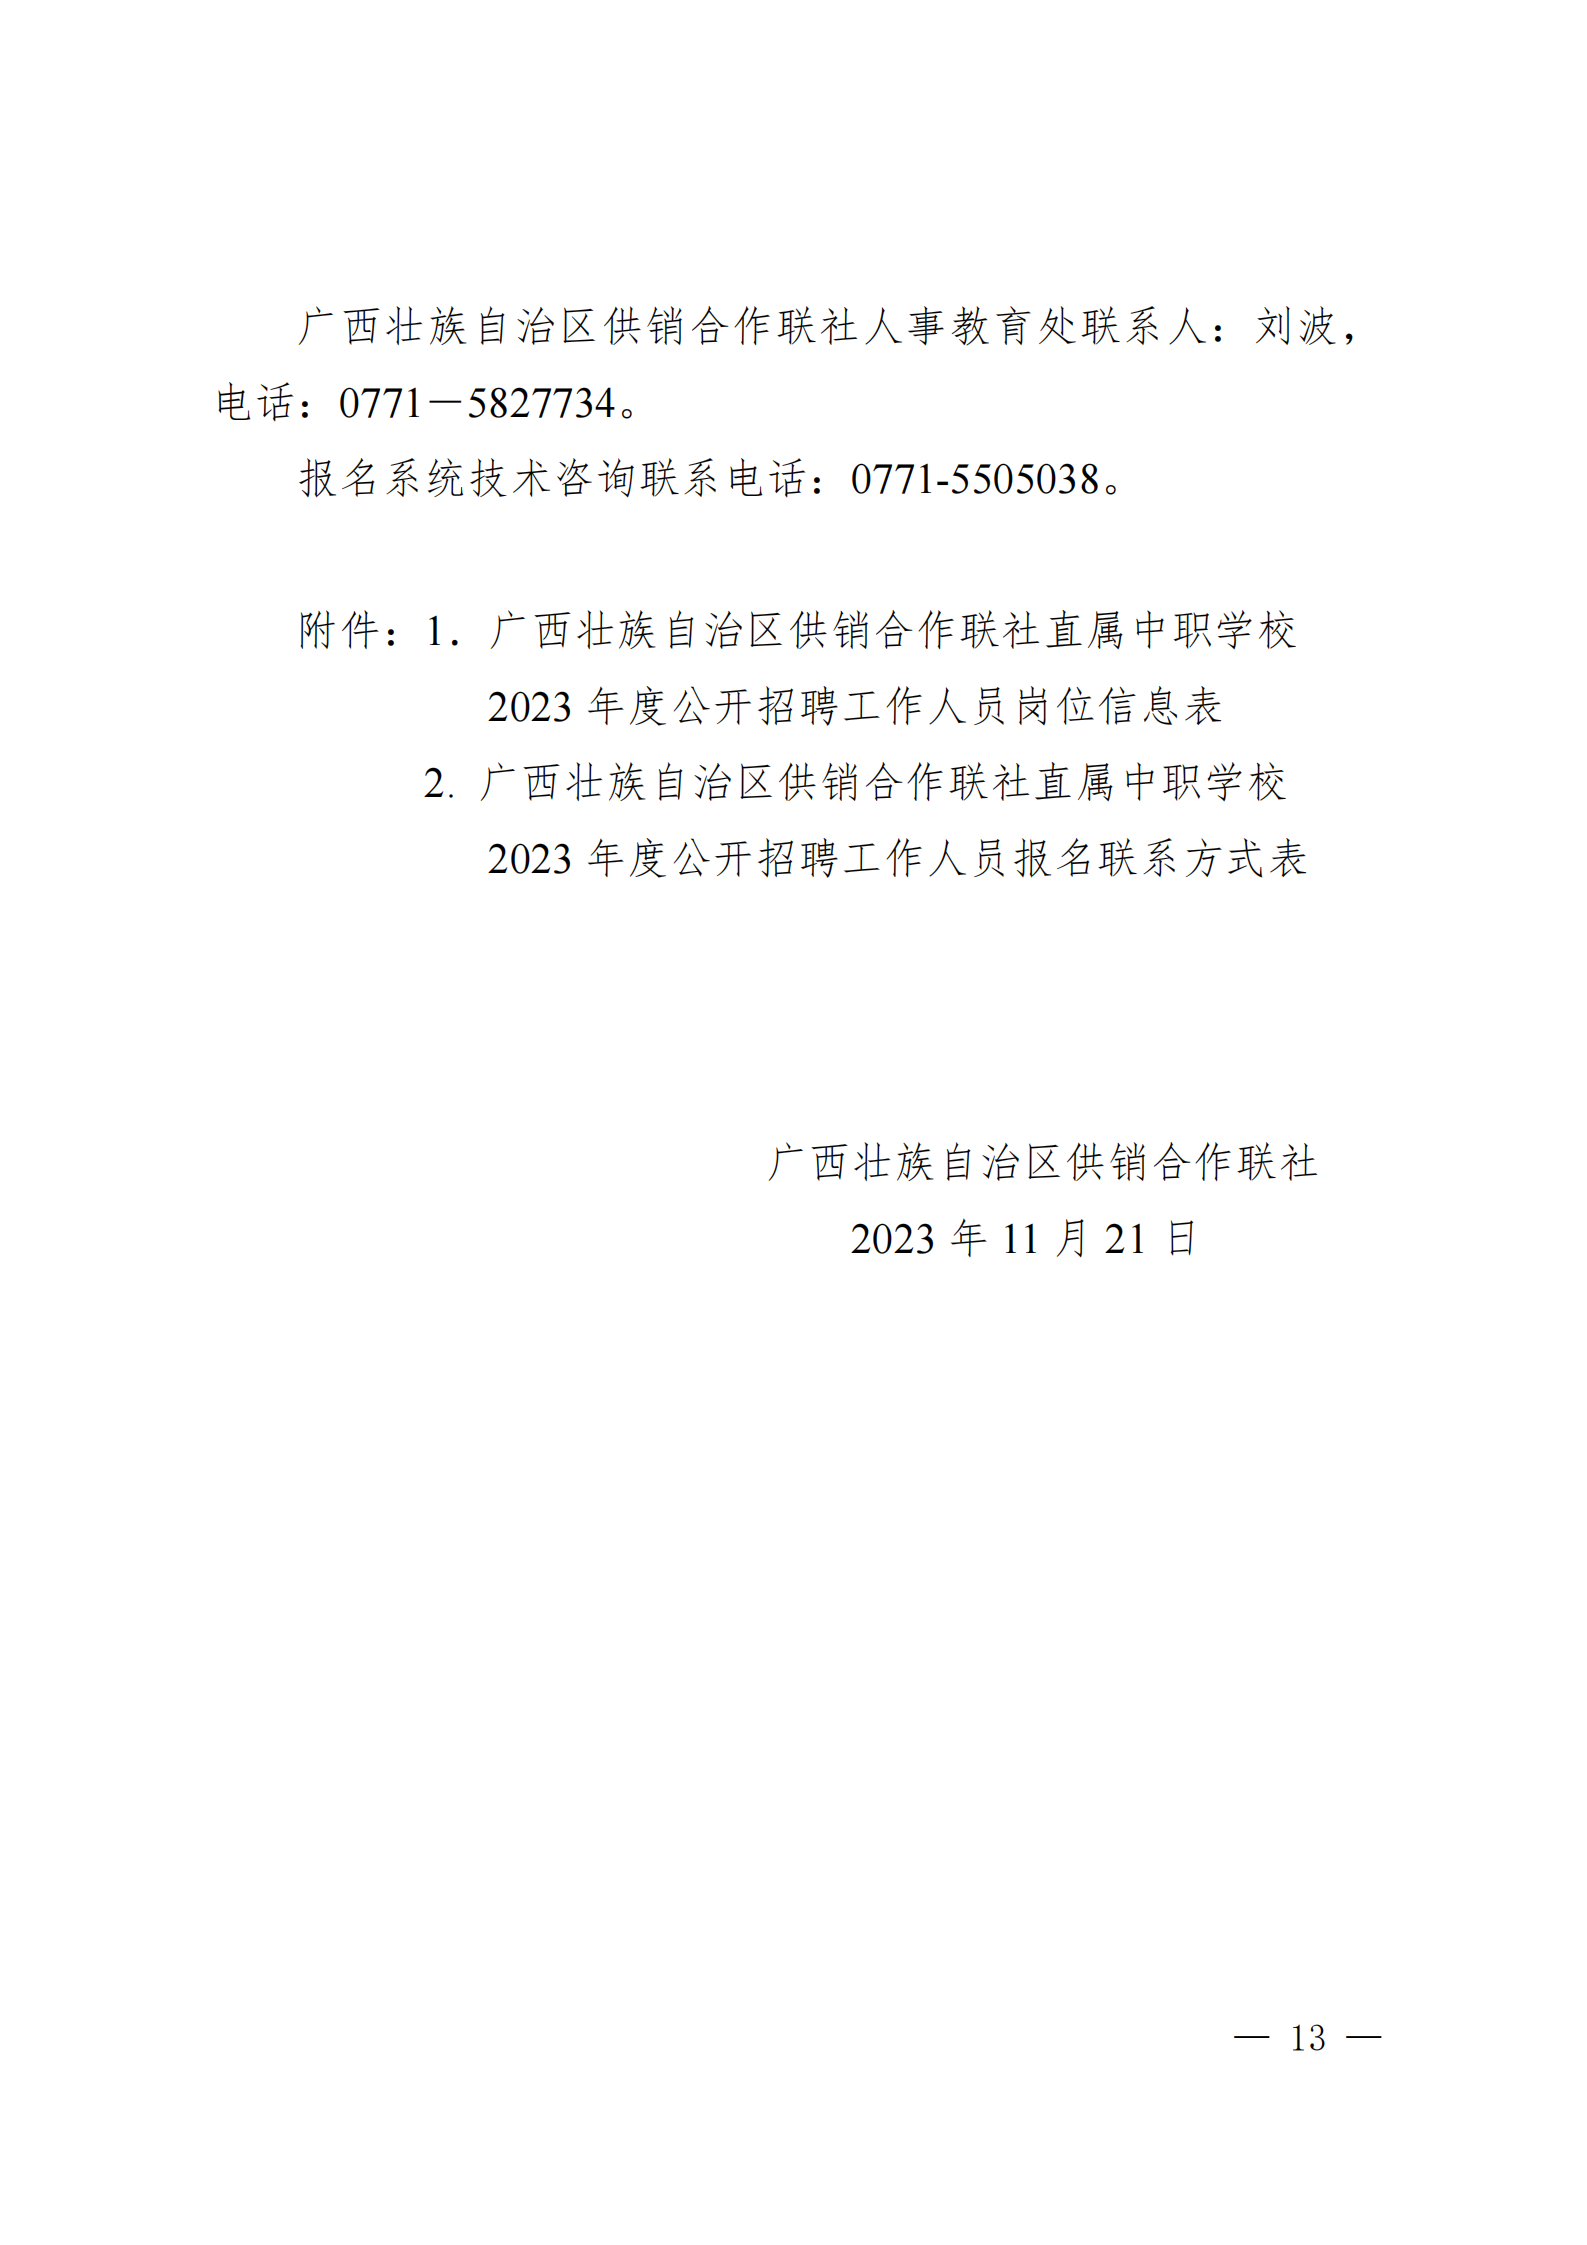 广西壮族自治区供销合作联社直属中职学校2023年度公开招聘工作人员公告_01.png